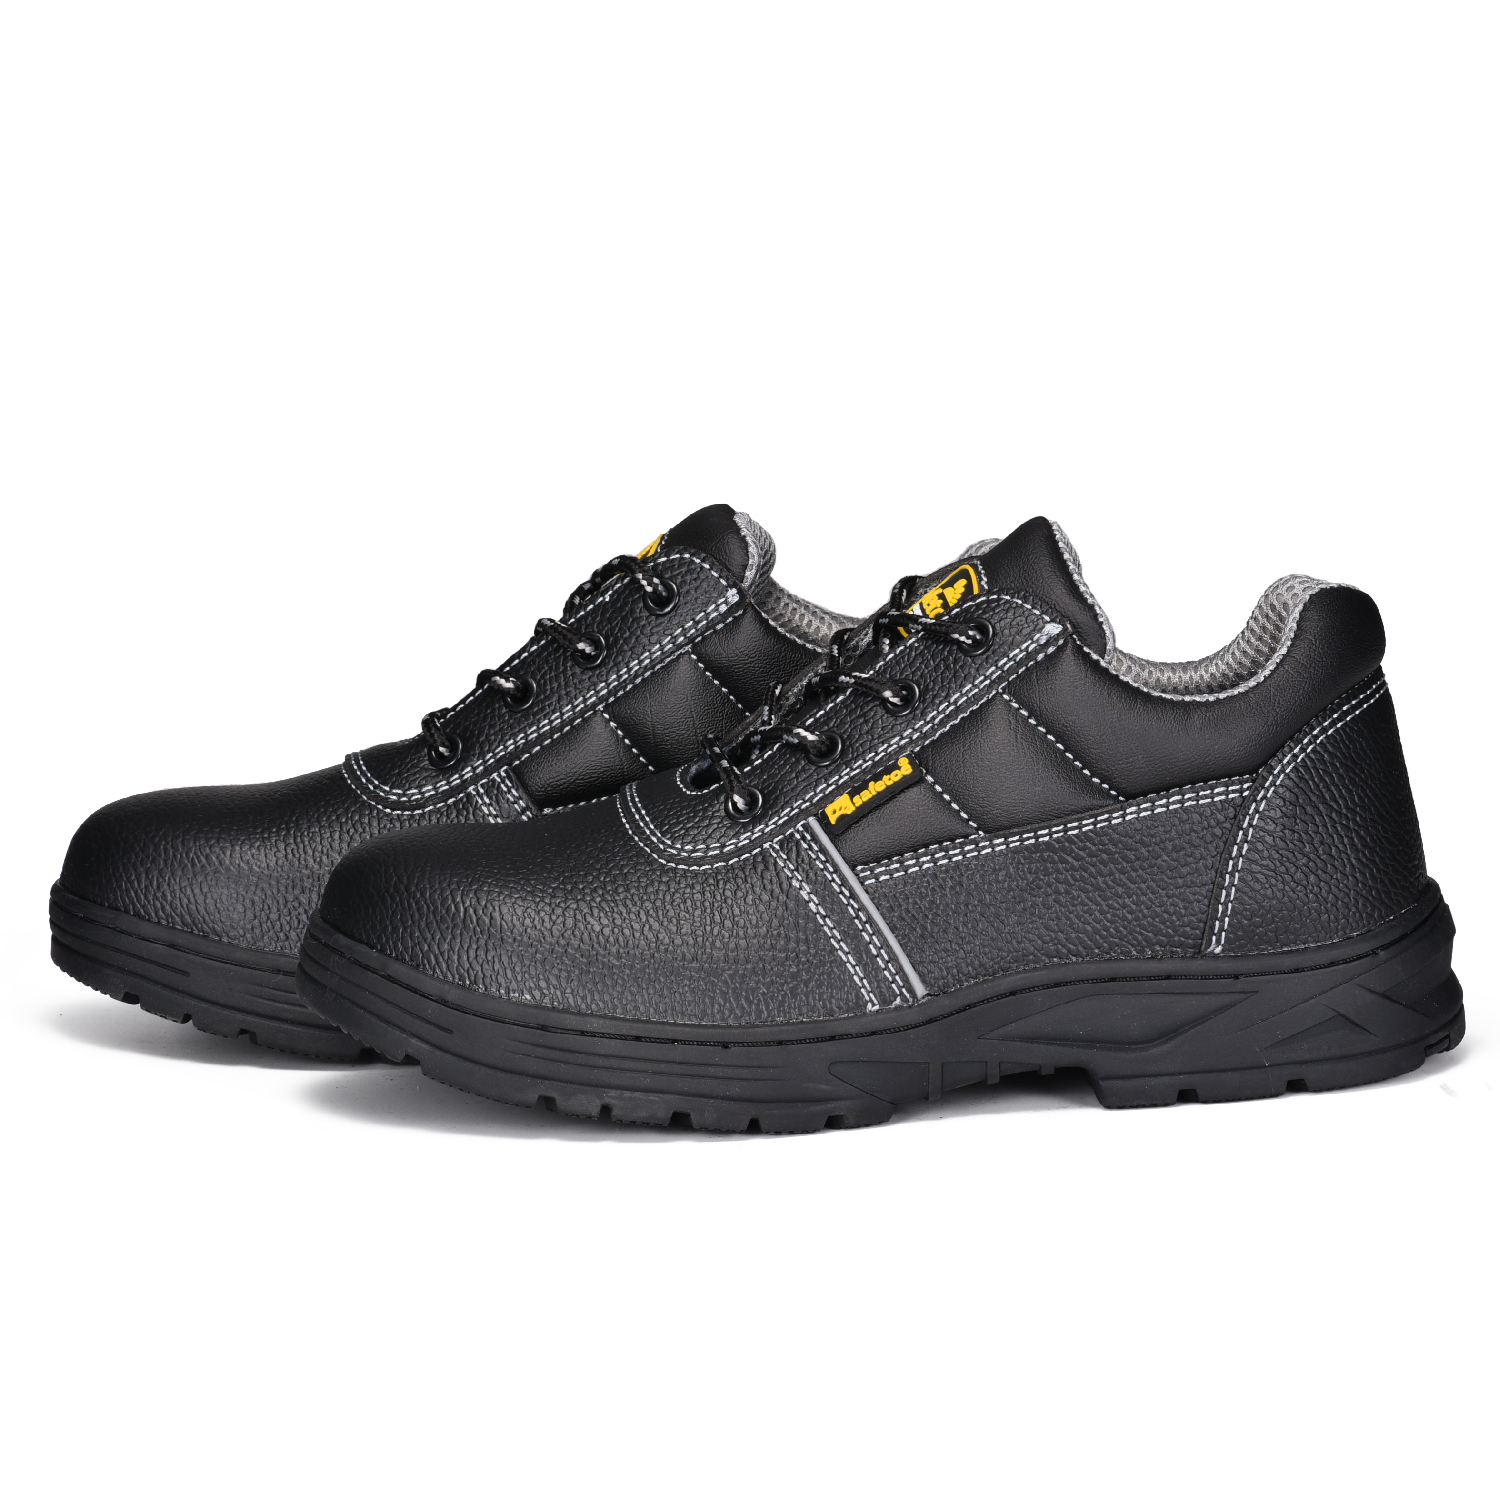 Защитная рабочая обувь для горнодобывающей промышленности со стальным носком L-7006RB